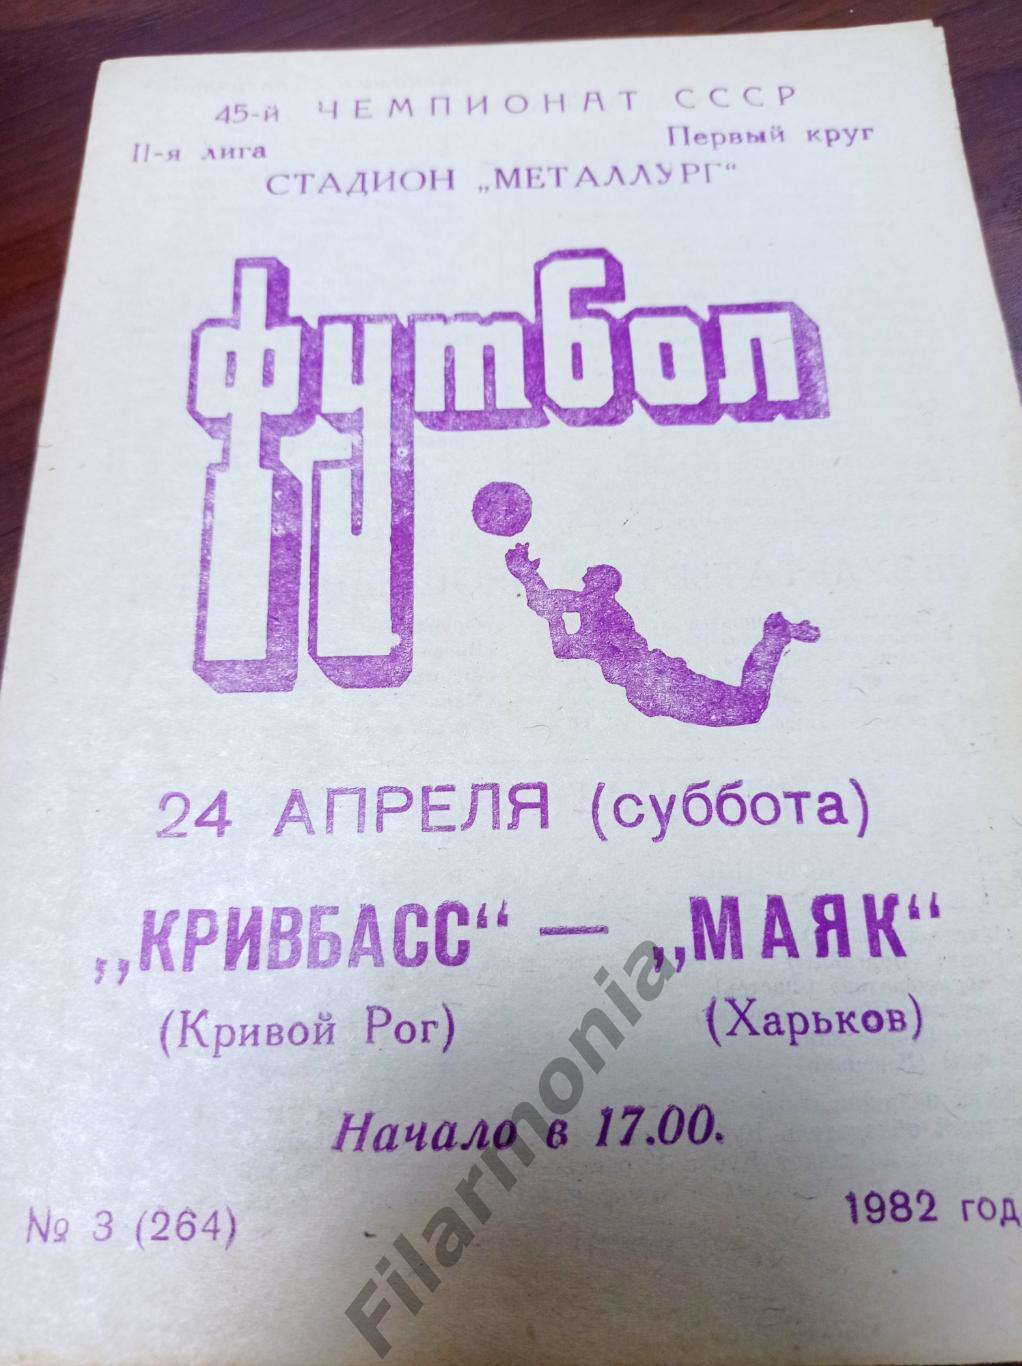 1982 Кривбасс Кривой Рог - Маяк Харьков